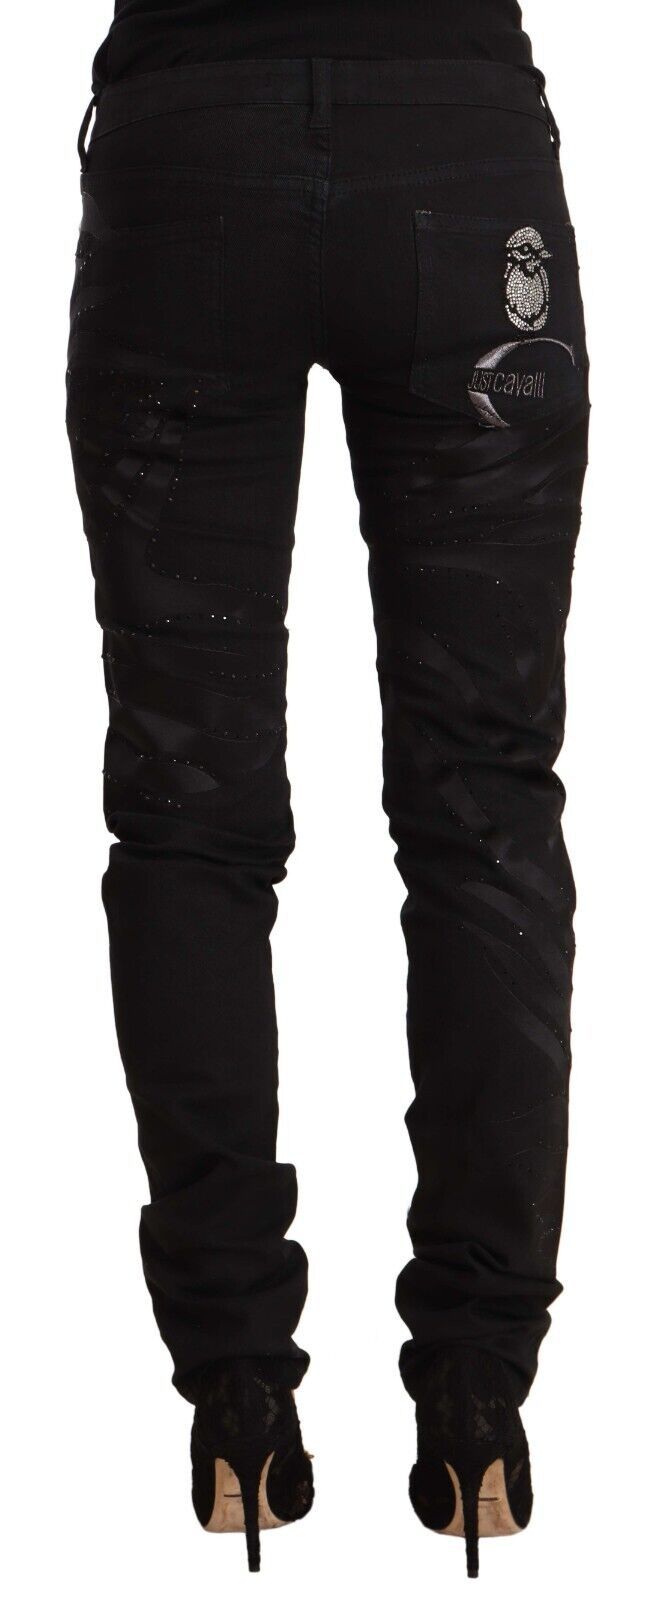 Just Cavalli Elegant Black Slim Fit Embellished Women's Jeans